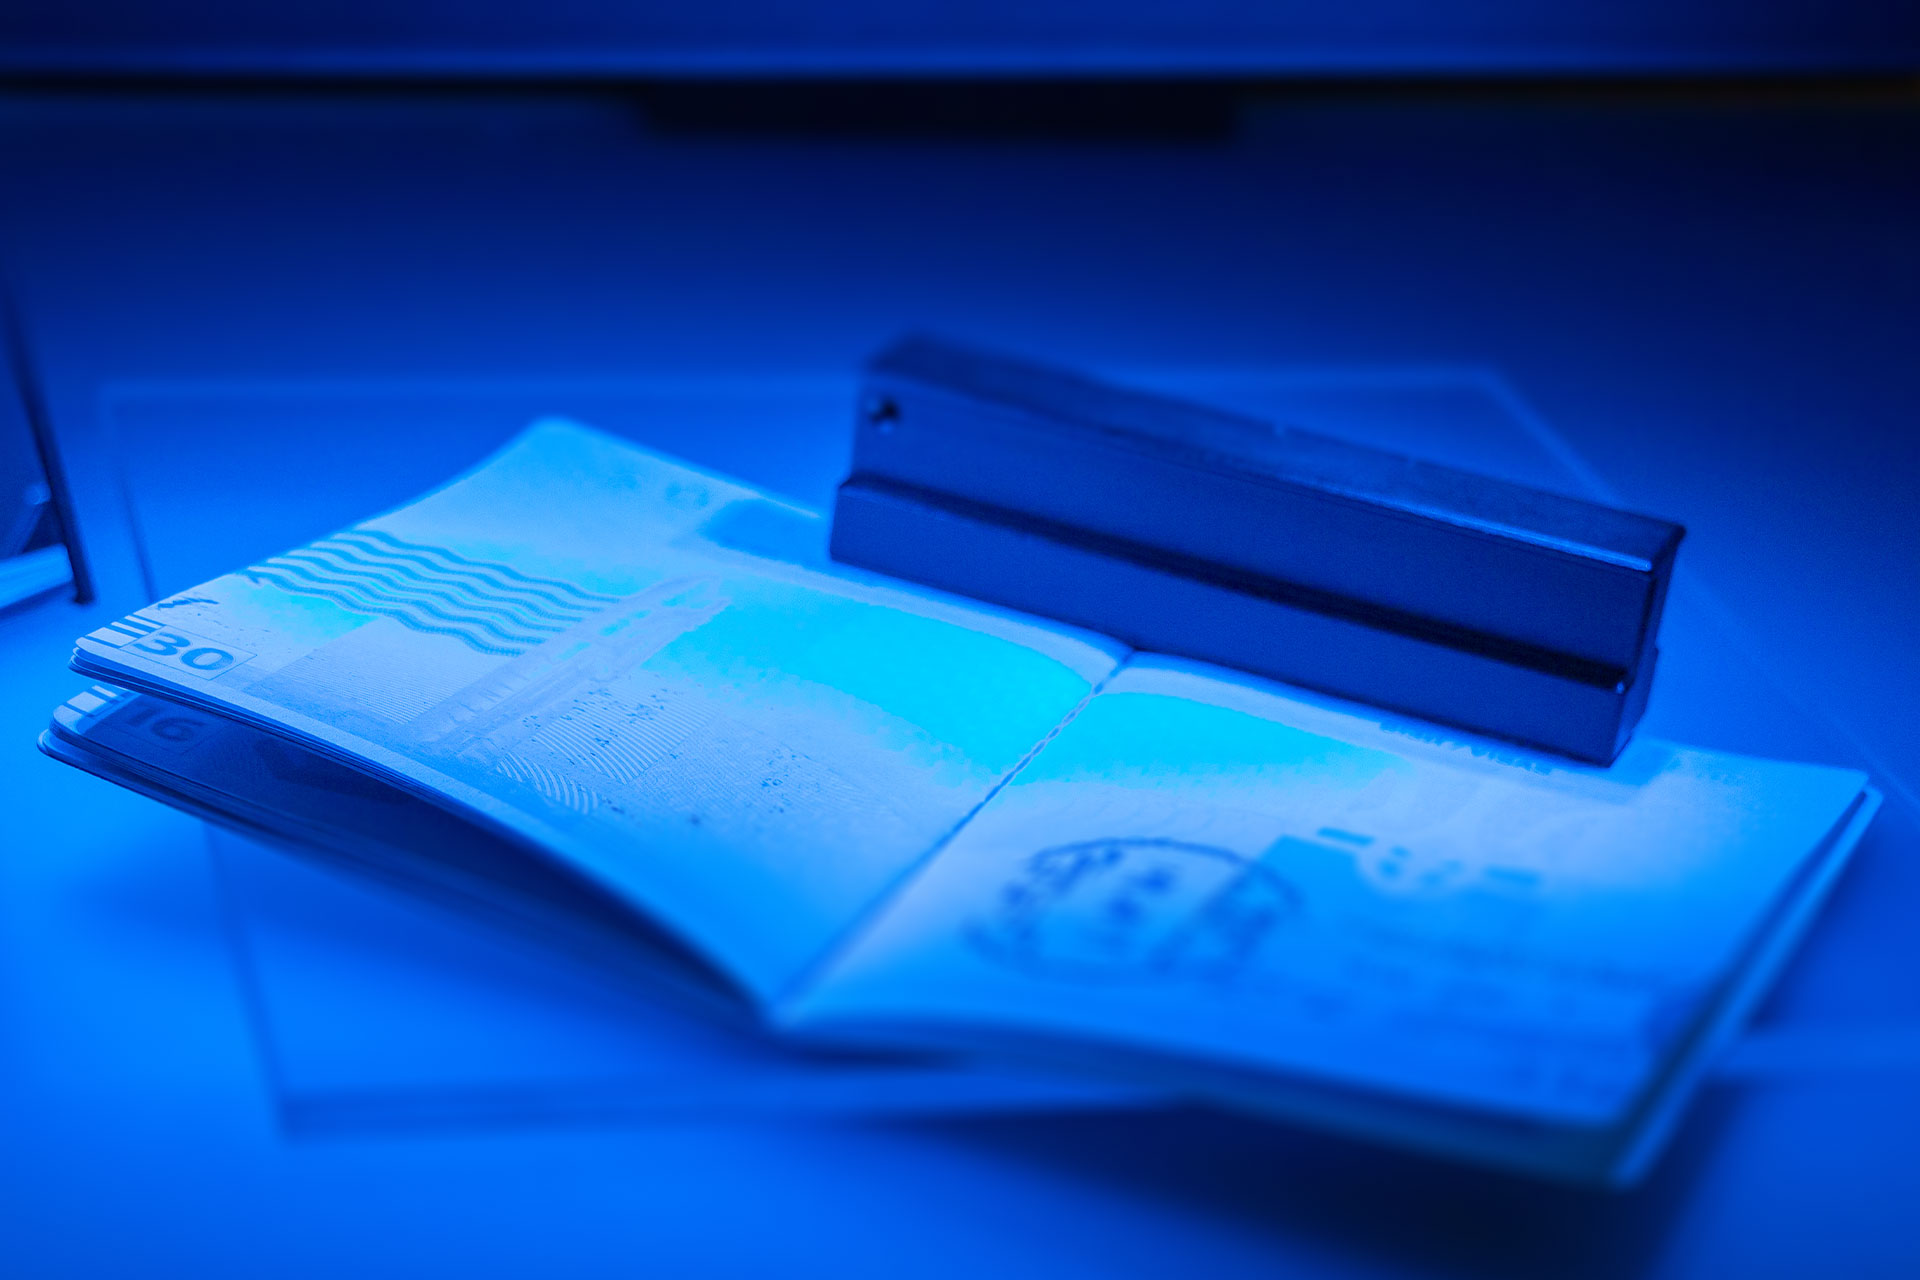 Lupe, Leuchte, Lampe? Mit welchem technischen Hilfsmittel lassen sich UV-Merkmale besser prüfen?